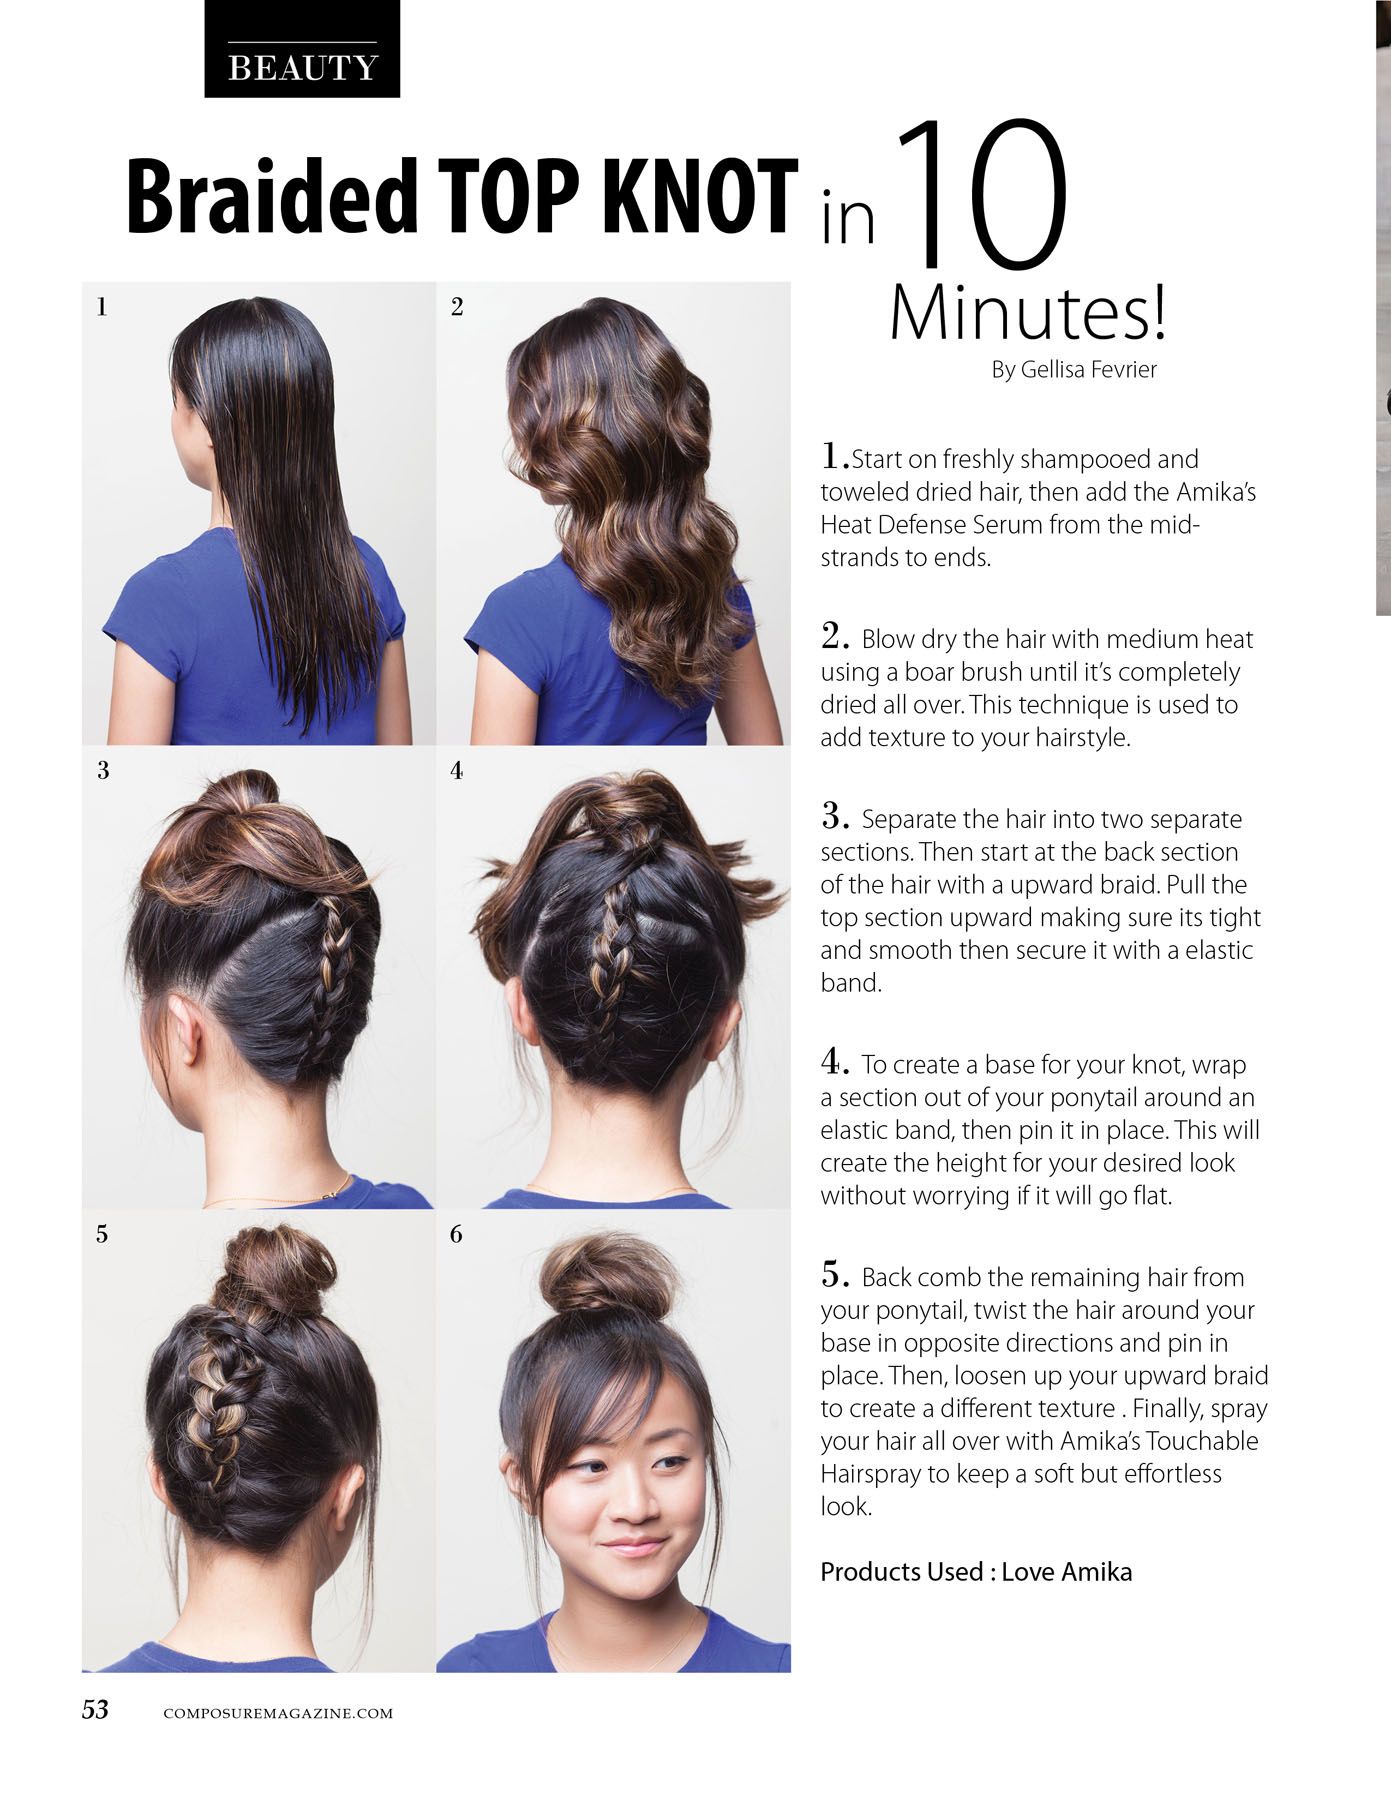 Braided Top Knot hair tutorial